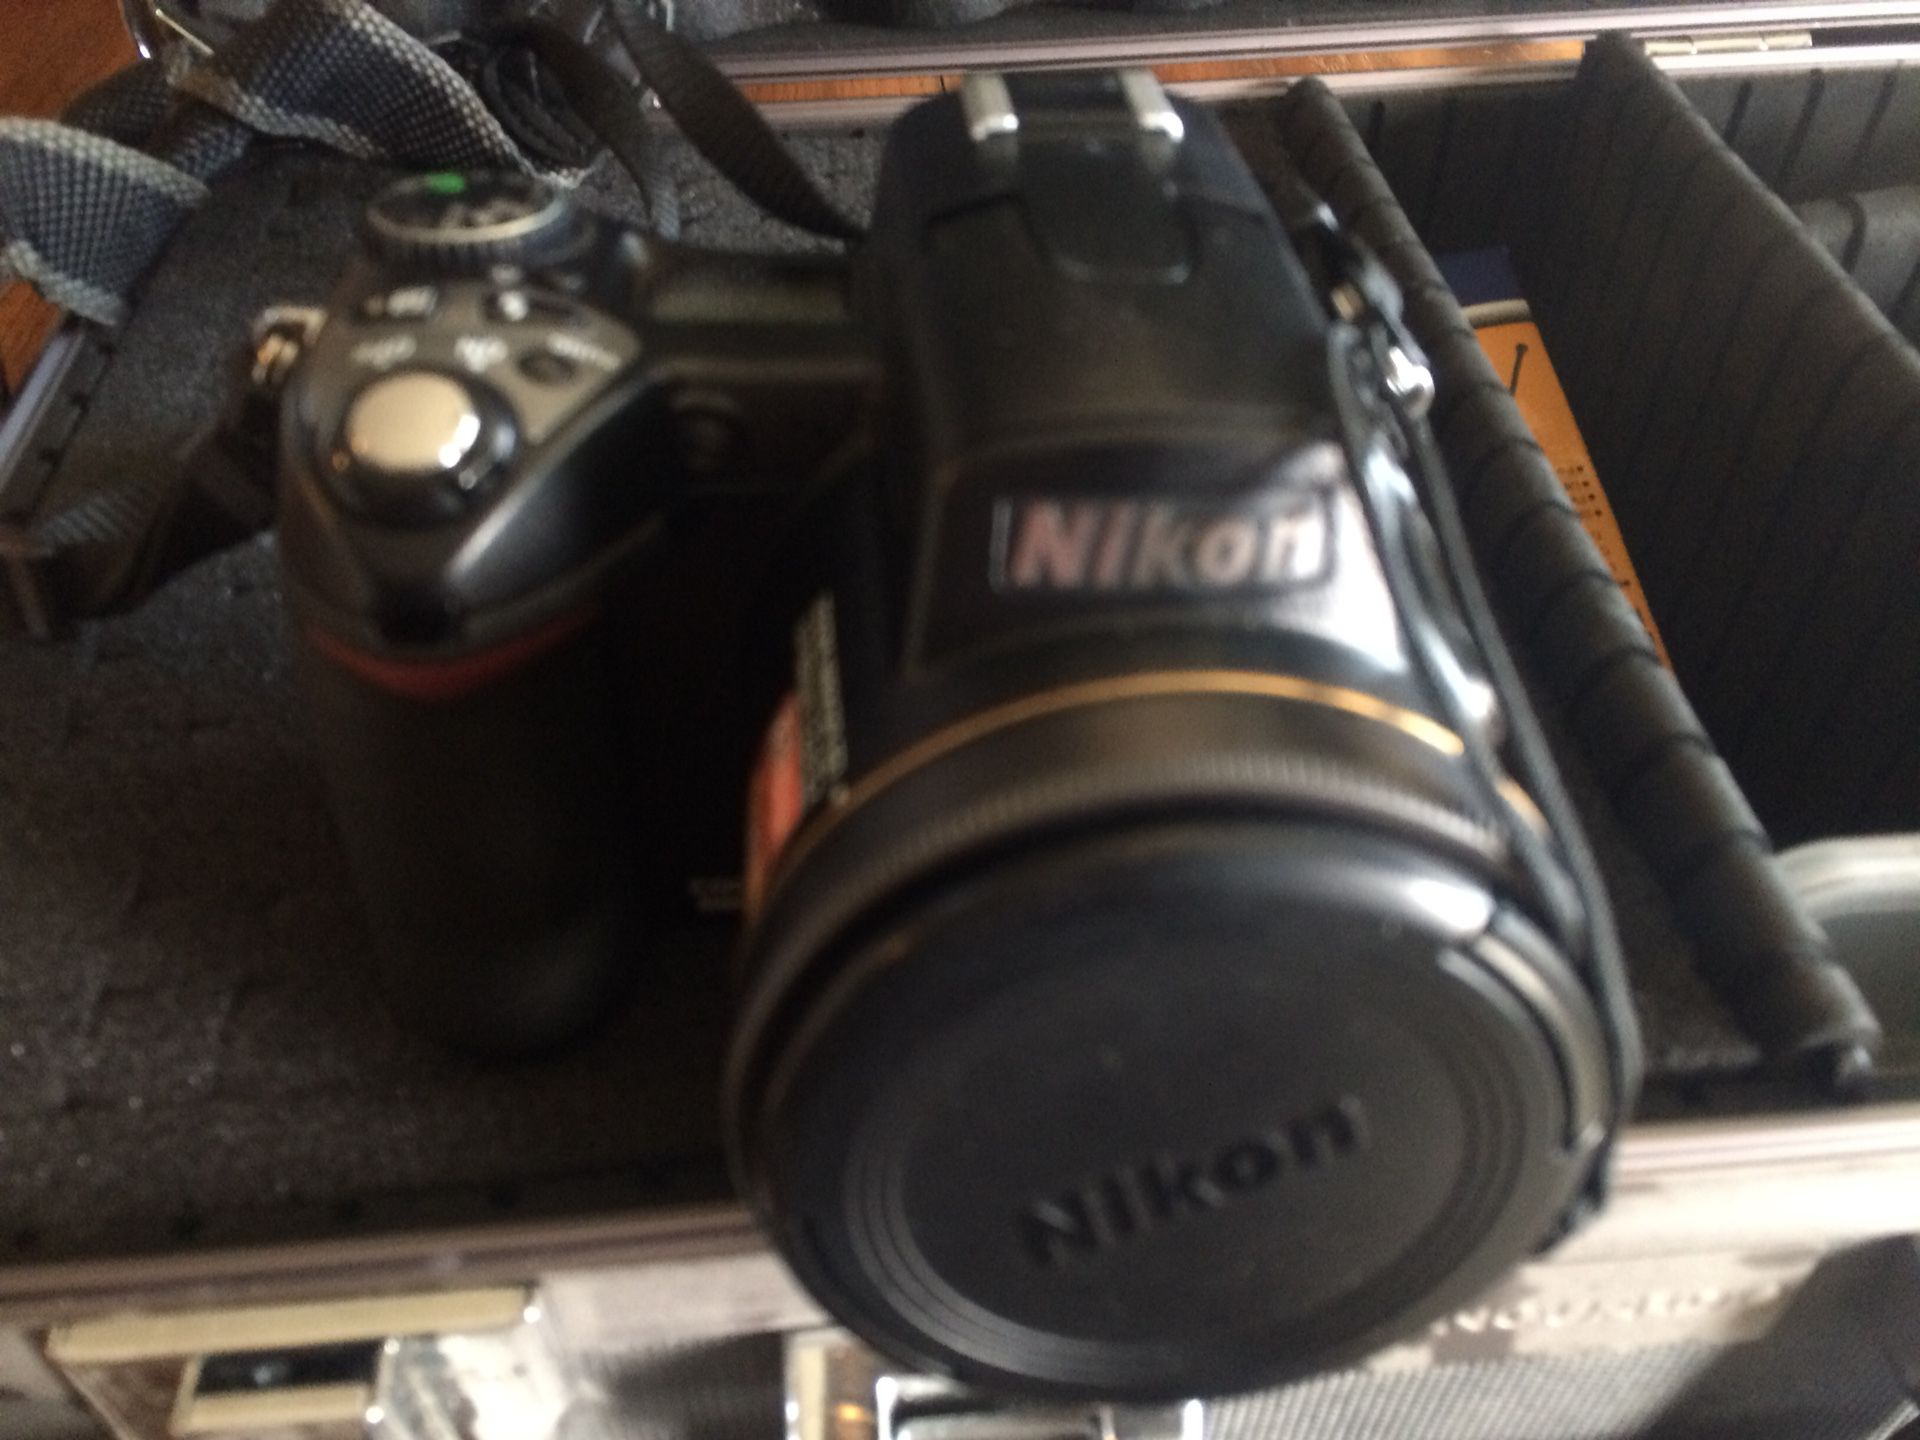 Nikon Coolpix 8800 Pro Bundle